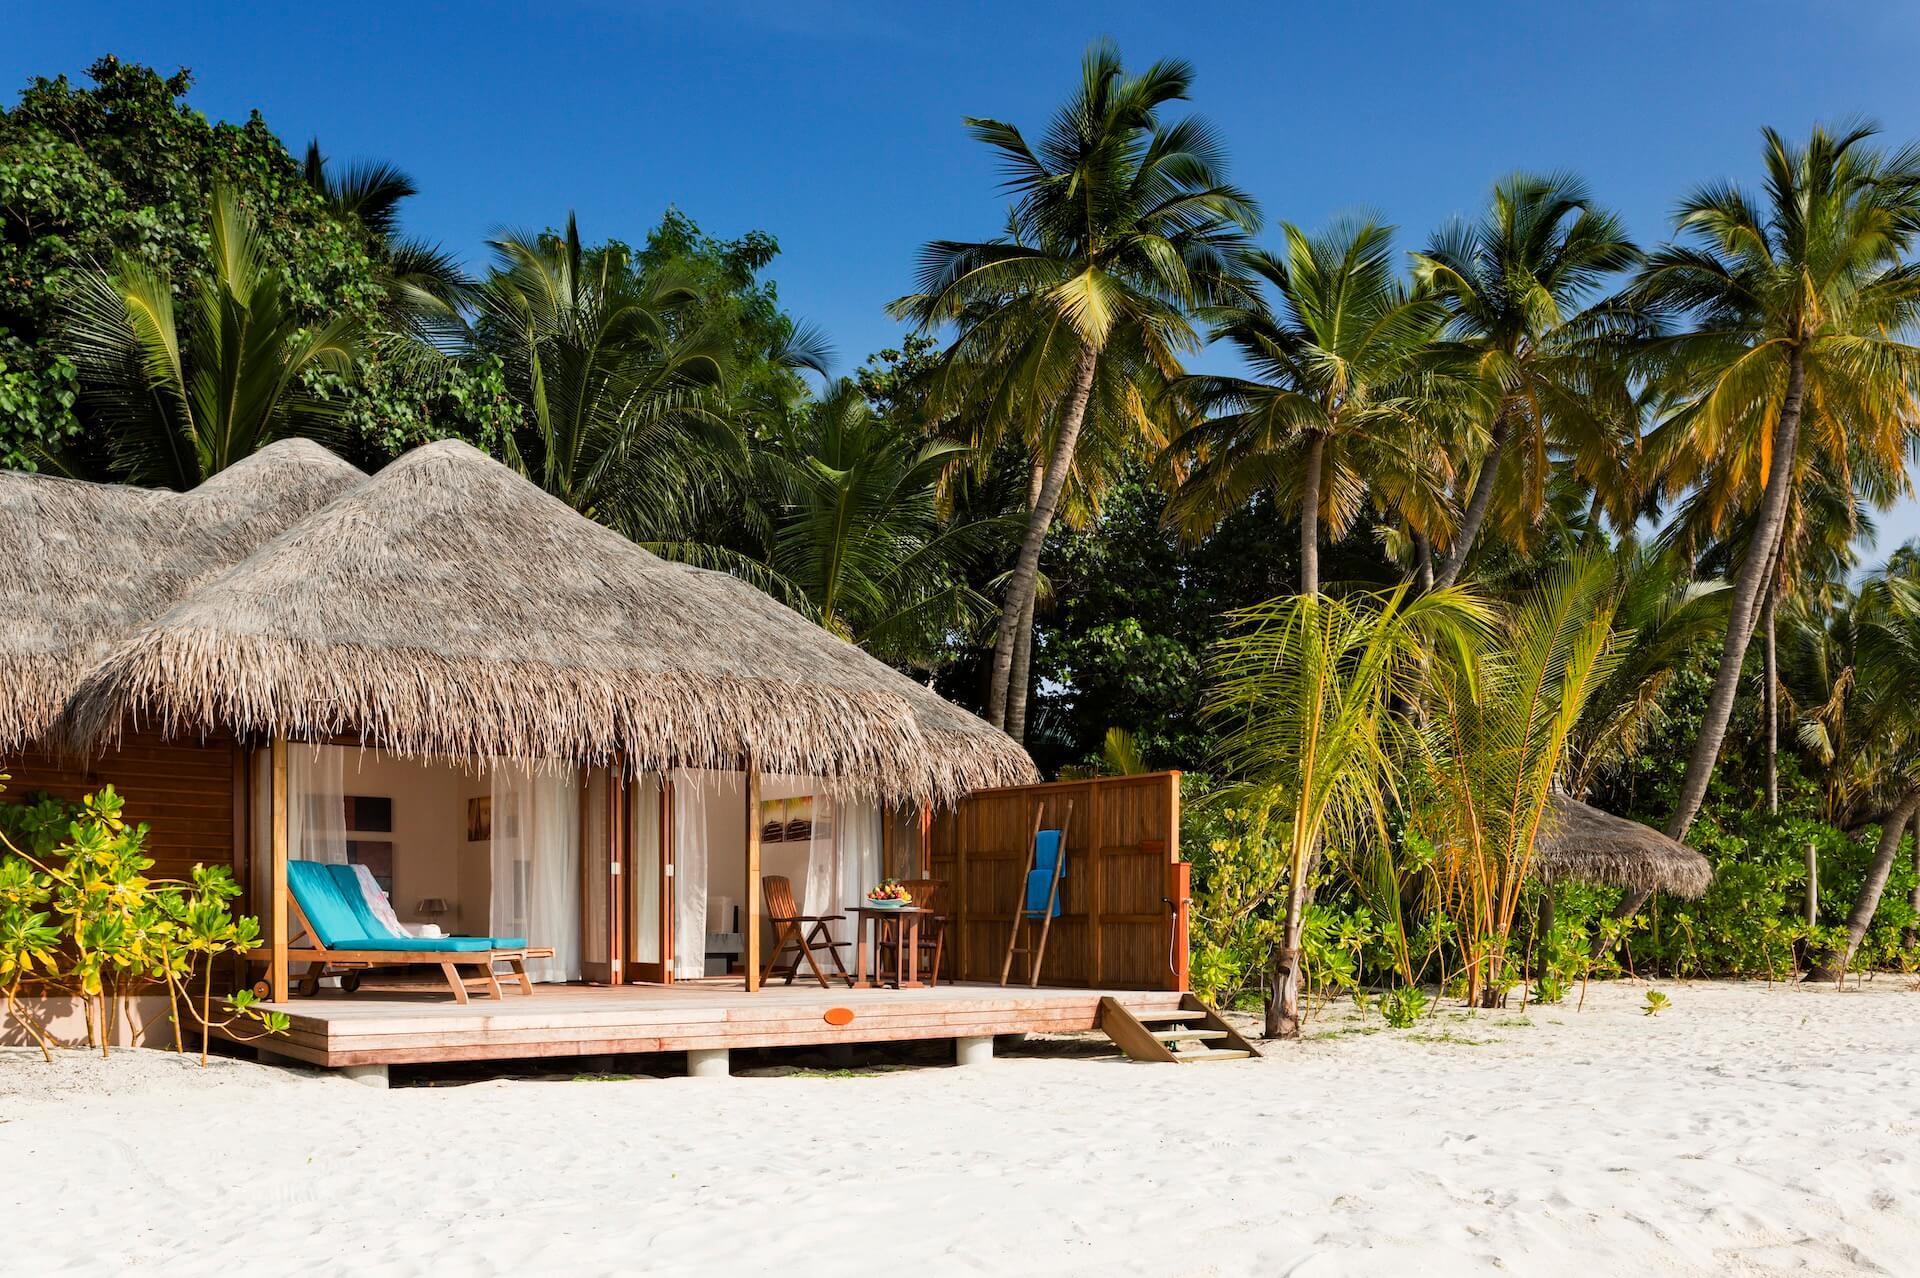 Island resort spa мальдивы. Остров Велиганду Мальдивы. Велиганду Мальдивы отель. Veligandu Island Resort & Spa 4*. Beach Bungalow Мальдивы.